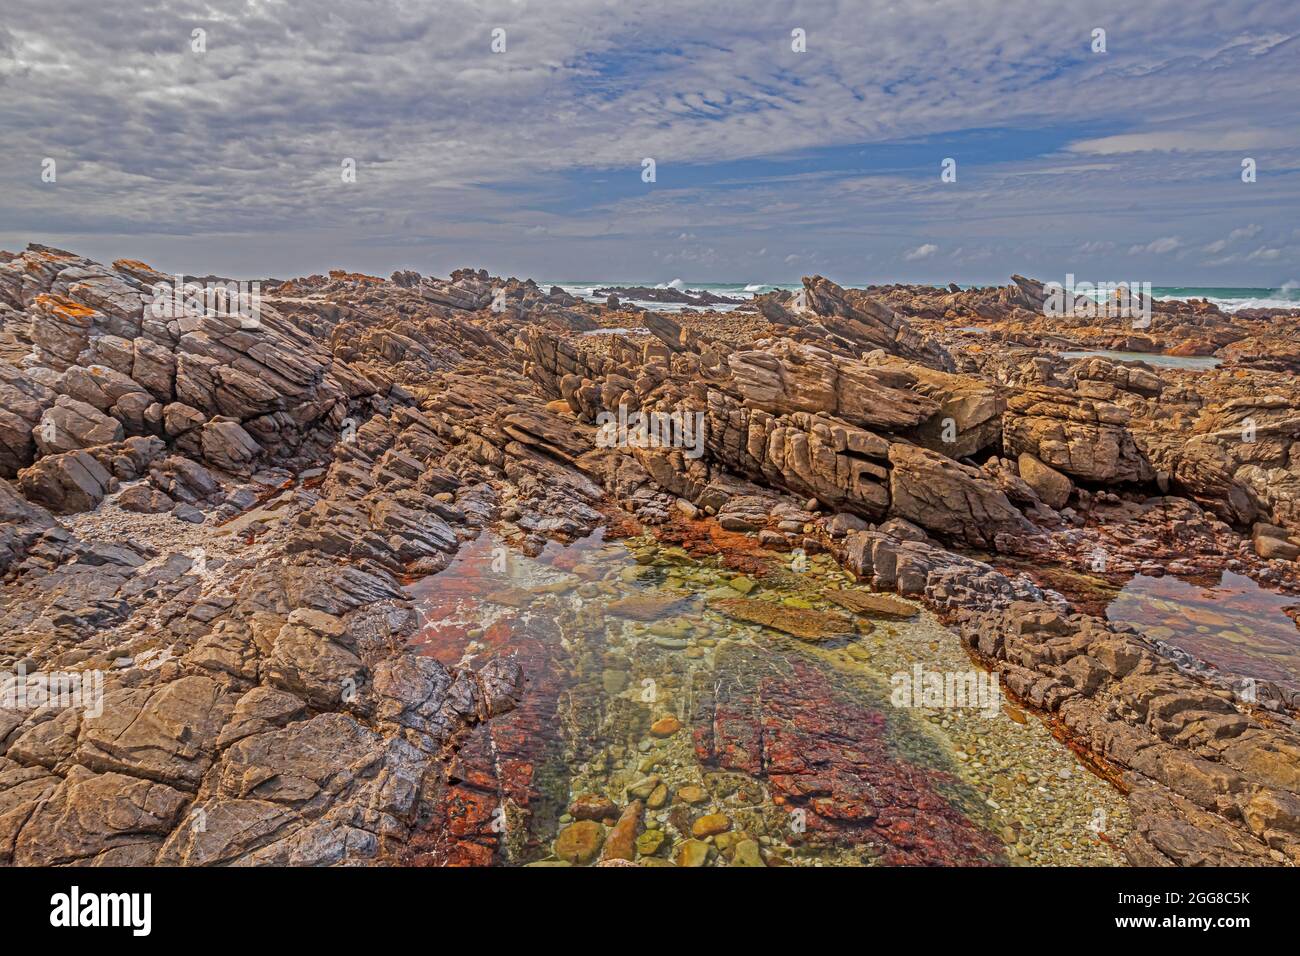 Felsformationen mit Gezeitenbecken am Ufer des Kap Agulhas in Südafrika, dem südlichsten Punkt des afrikanischen Kontinents. Stockfoto